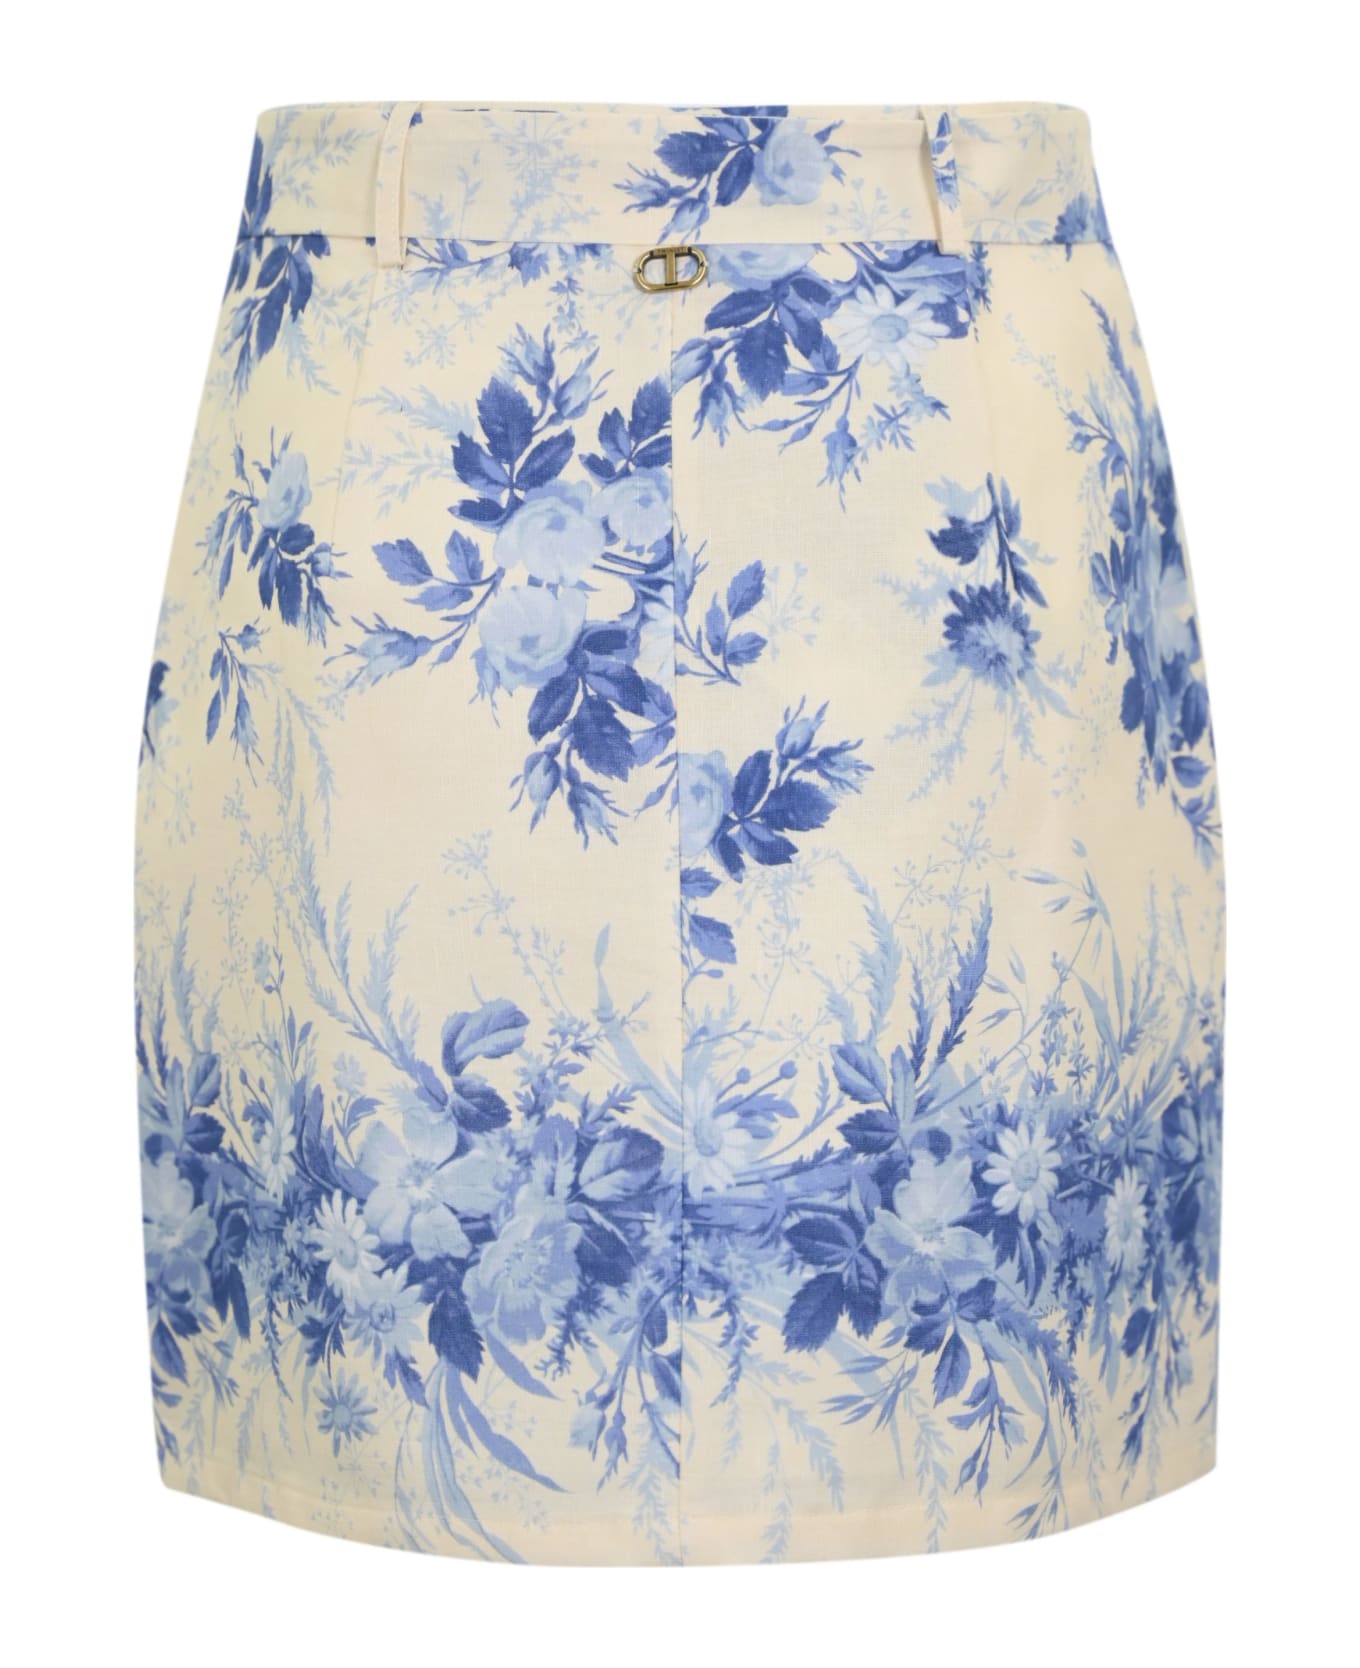 TwinSet Linen Skirt With Print - NEUTRALS/BLUE スカート